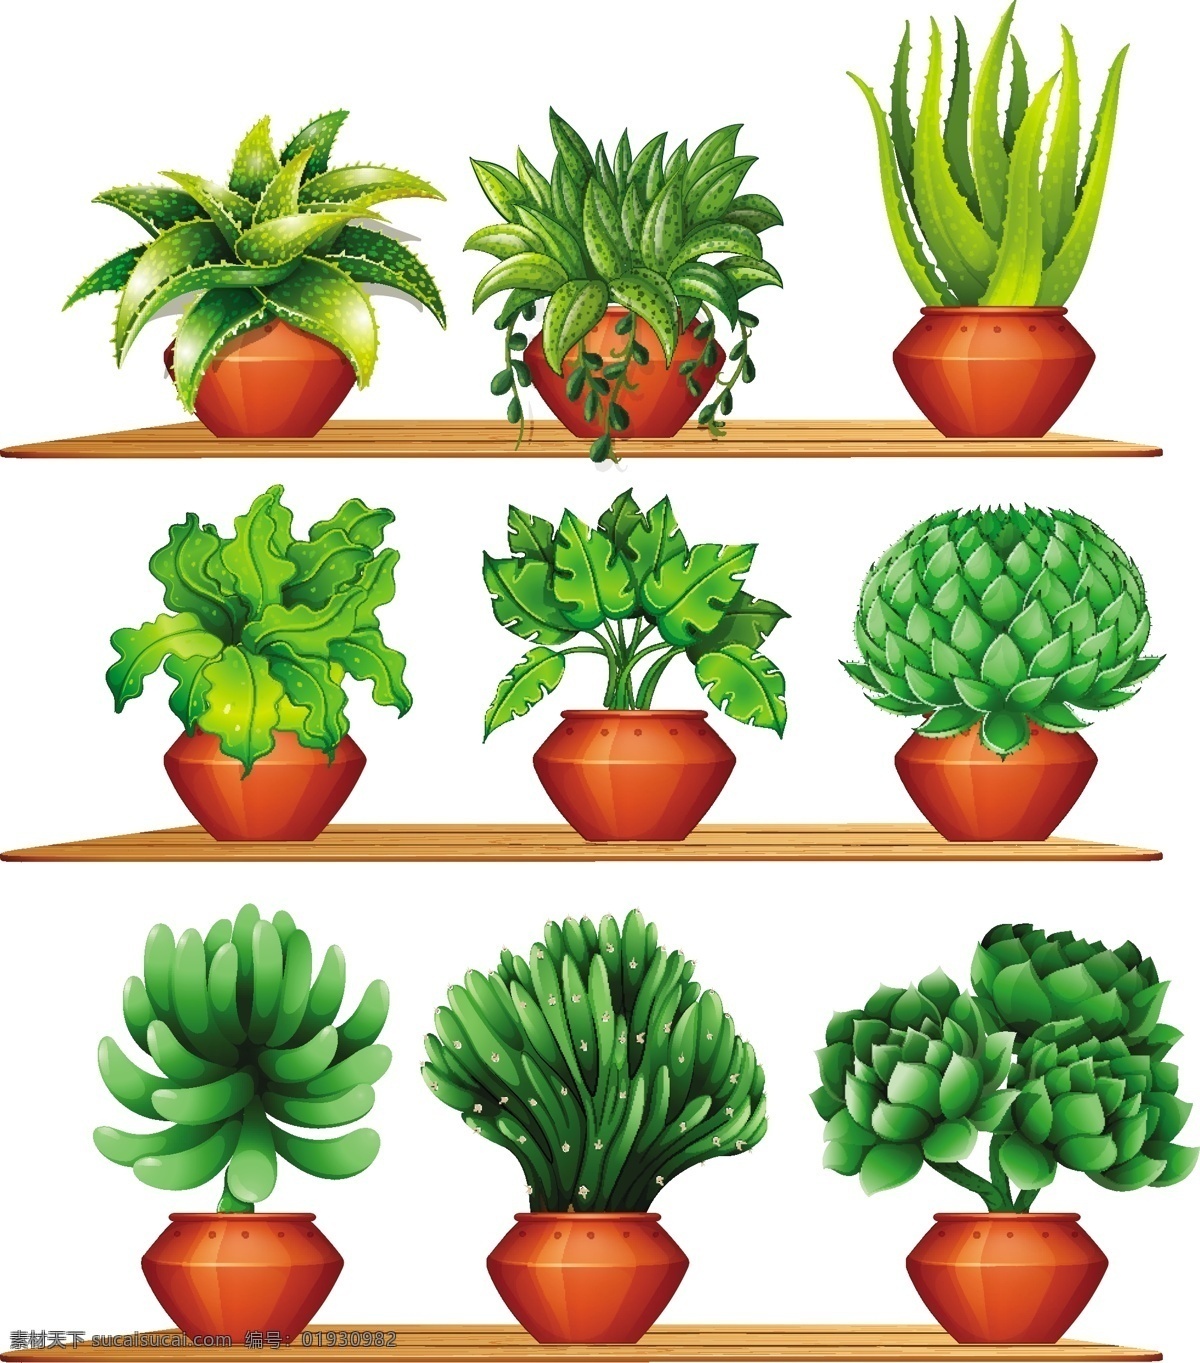 陶罐 里 各种 植物 插图 树叶 自然 森林 艺术 装饰 绘画 不同 粘土 花盆 种类